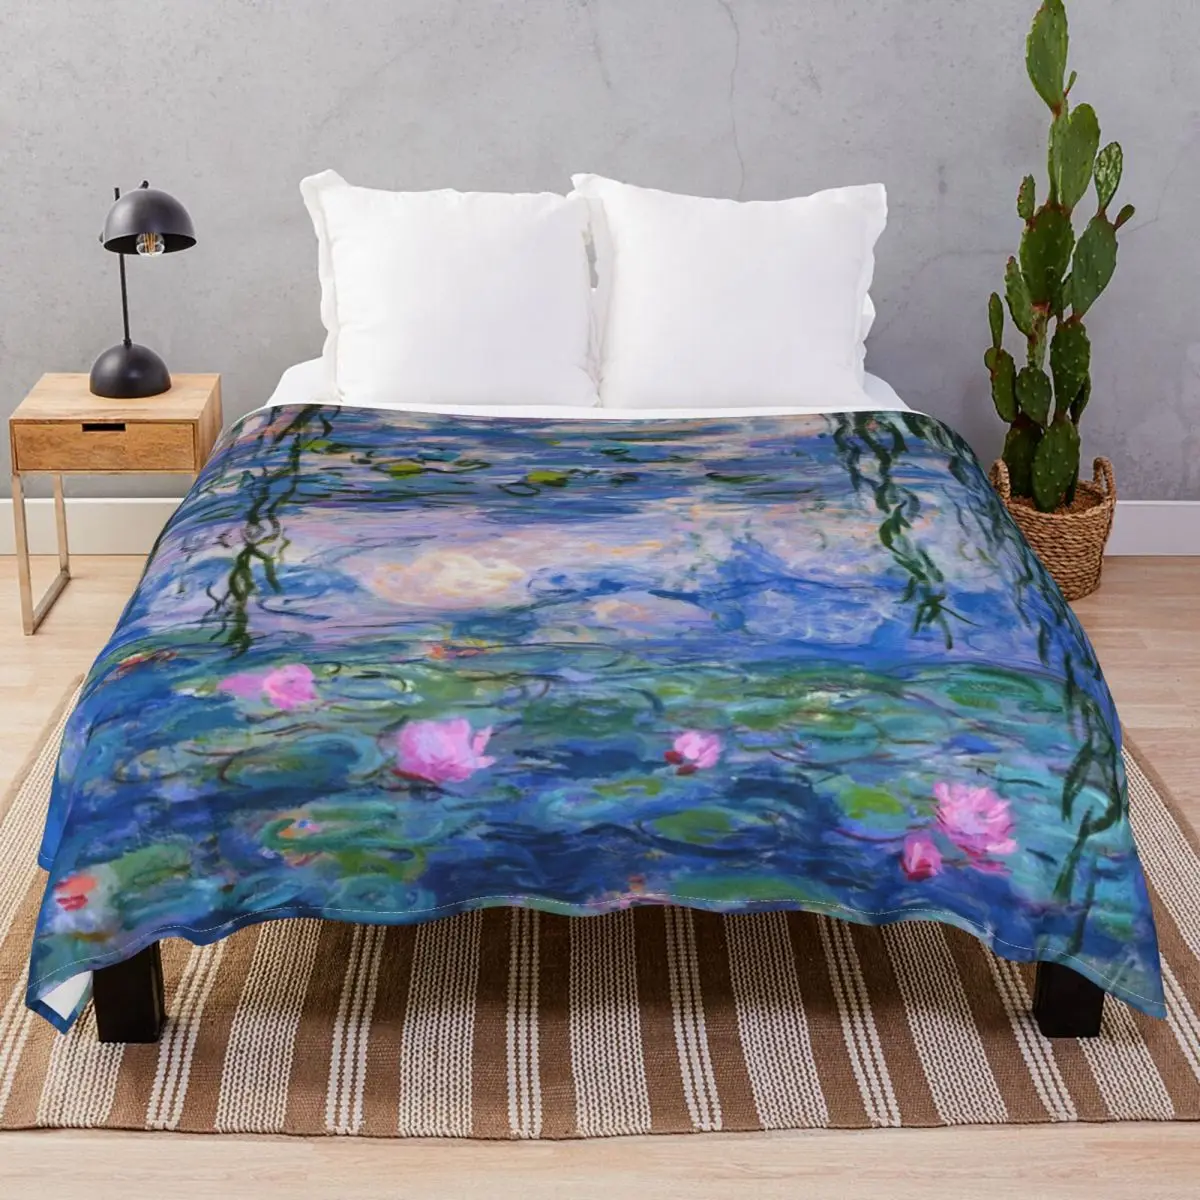 

Фланелевое Одеяло в виде водных лилий, ультрамягкое покрывало в стиле унисекс, для кровати, дома, дивана, путешествий, офиса